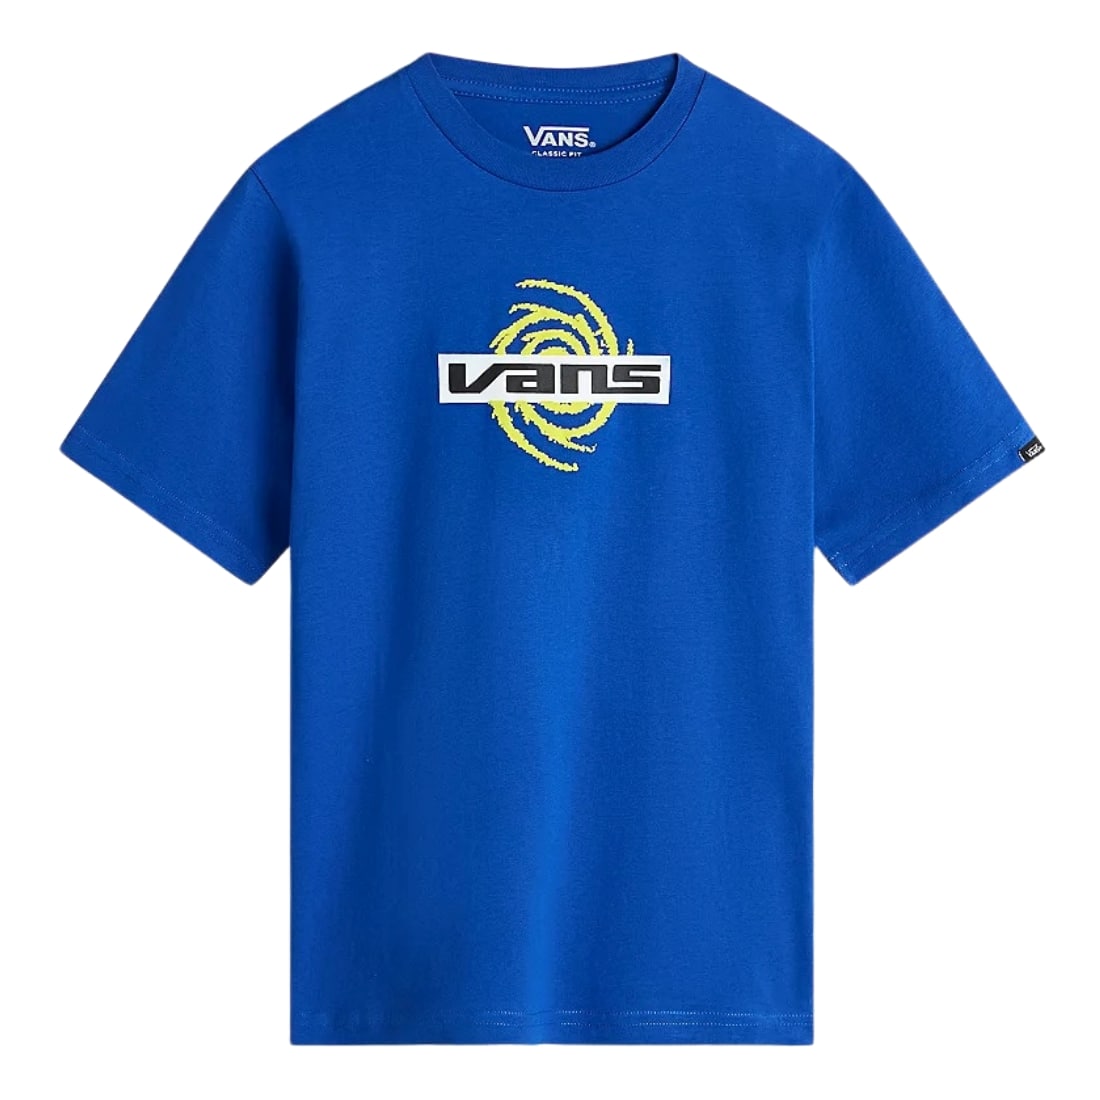 Vans Youth Galaxy Kids T-Shirt - Surf The Web - Boys Skate Brand T-Shirt by Vans